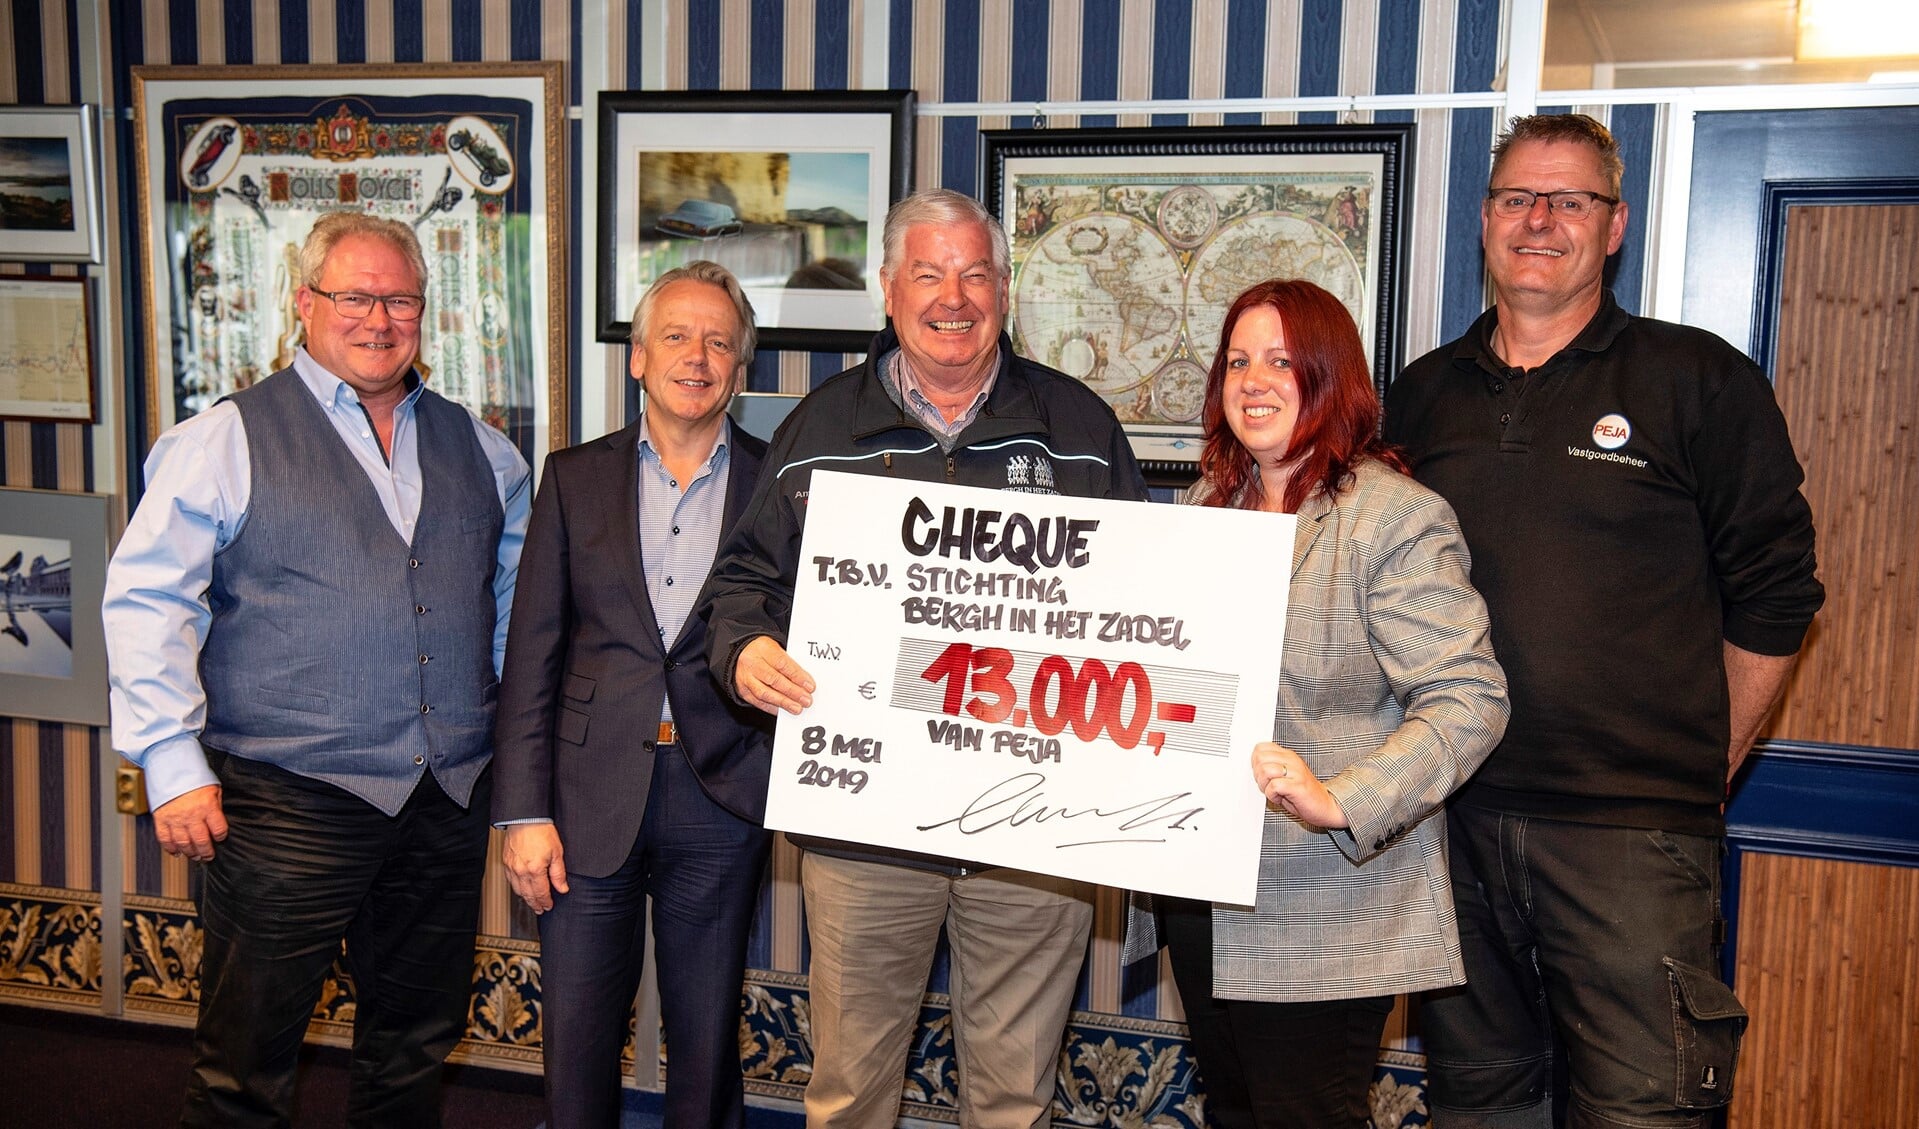 Peja  maakt Bergh in het Zadel blij met een cheque van 13.000 euro. Foto: PR